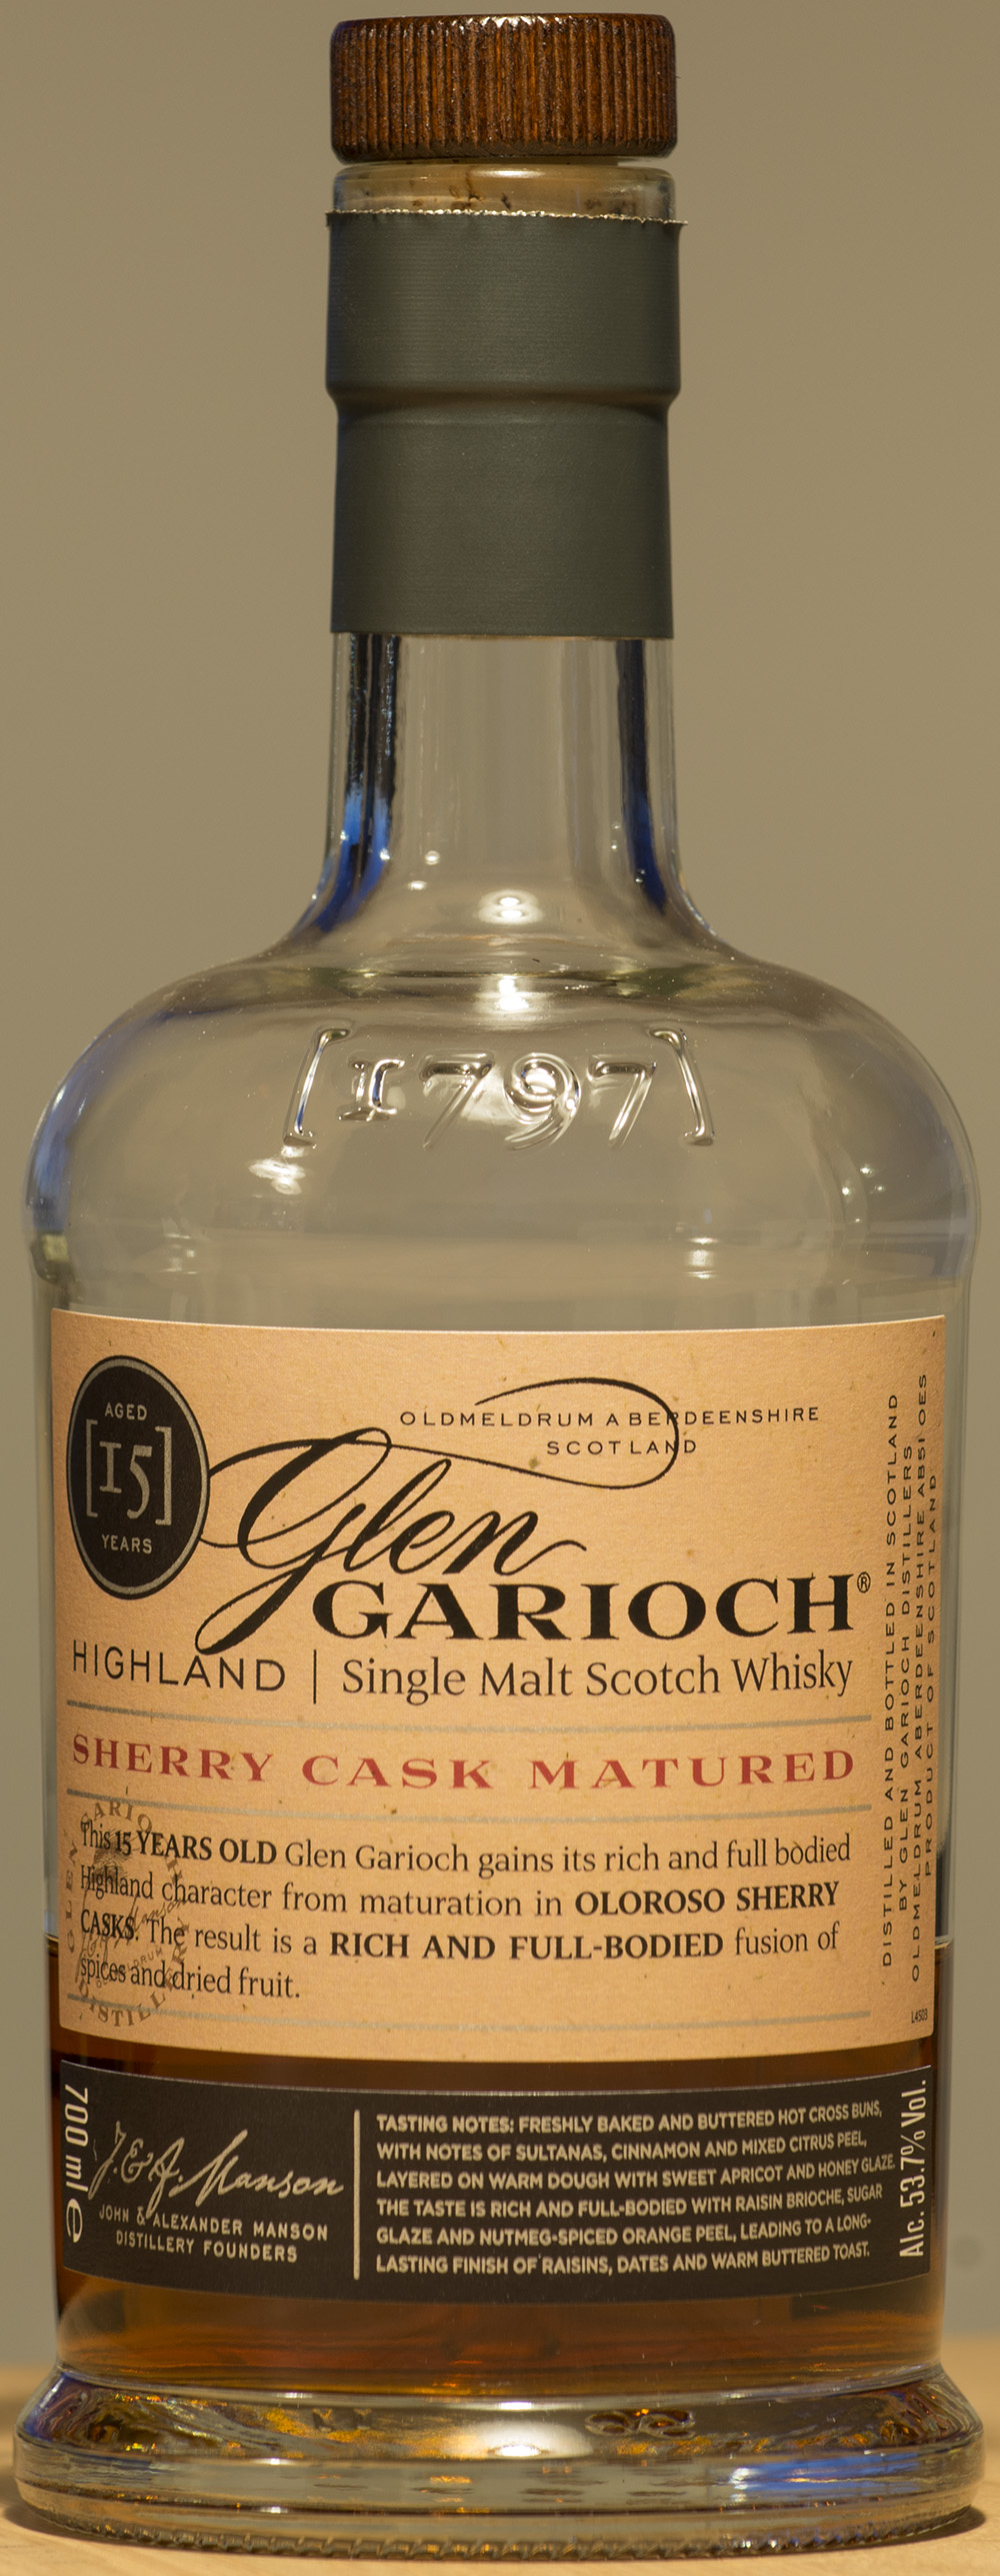 Billede: DSC_9085 - Glen Garioch 15 - bottle front.jpg